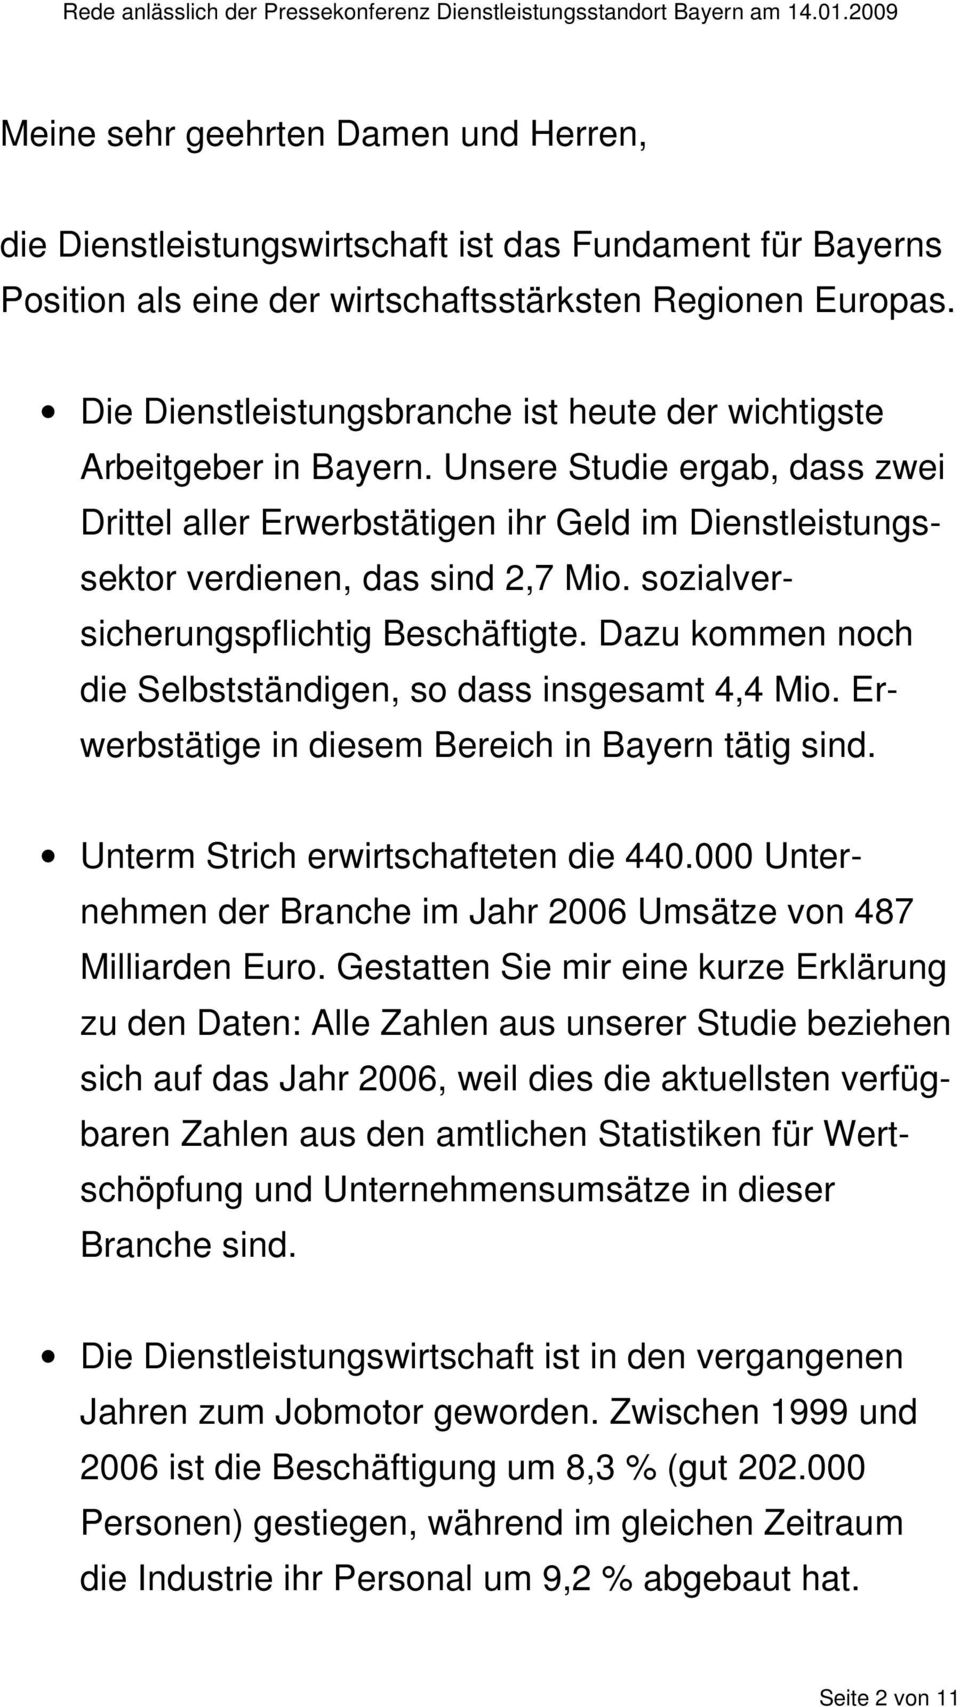 sozialversicherungspflichtig Beschäftigte. Dazu kommen noch die Selbstständigen, so dass insgesamt 4,4 Mio. Erwerbstätige in diesem Bereich in Bayern tätig sind.